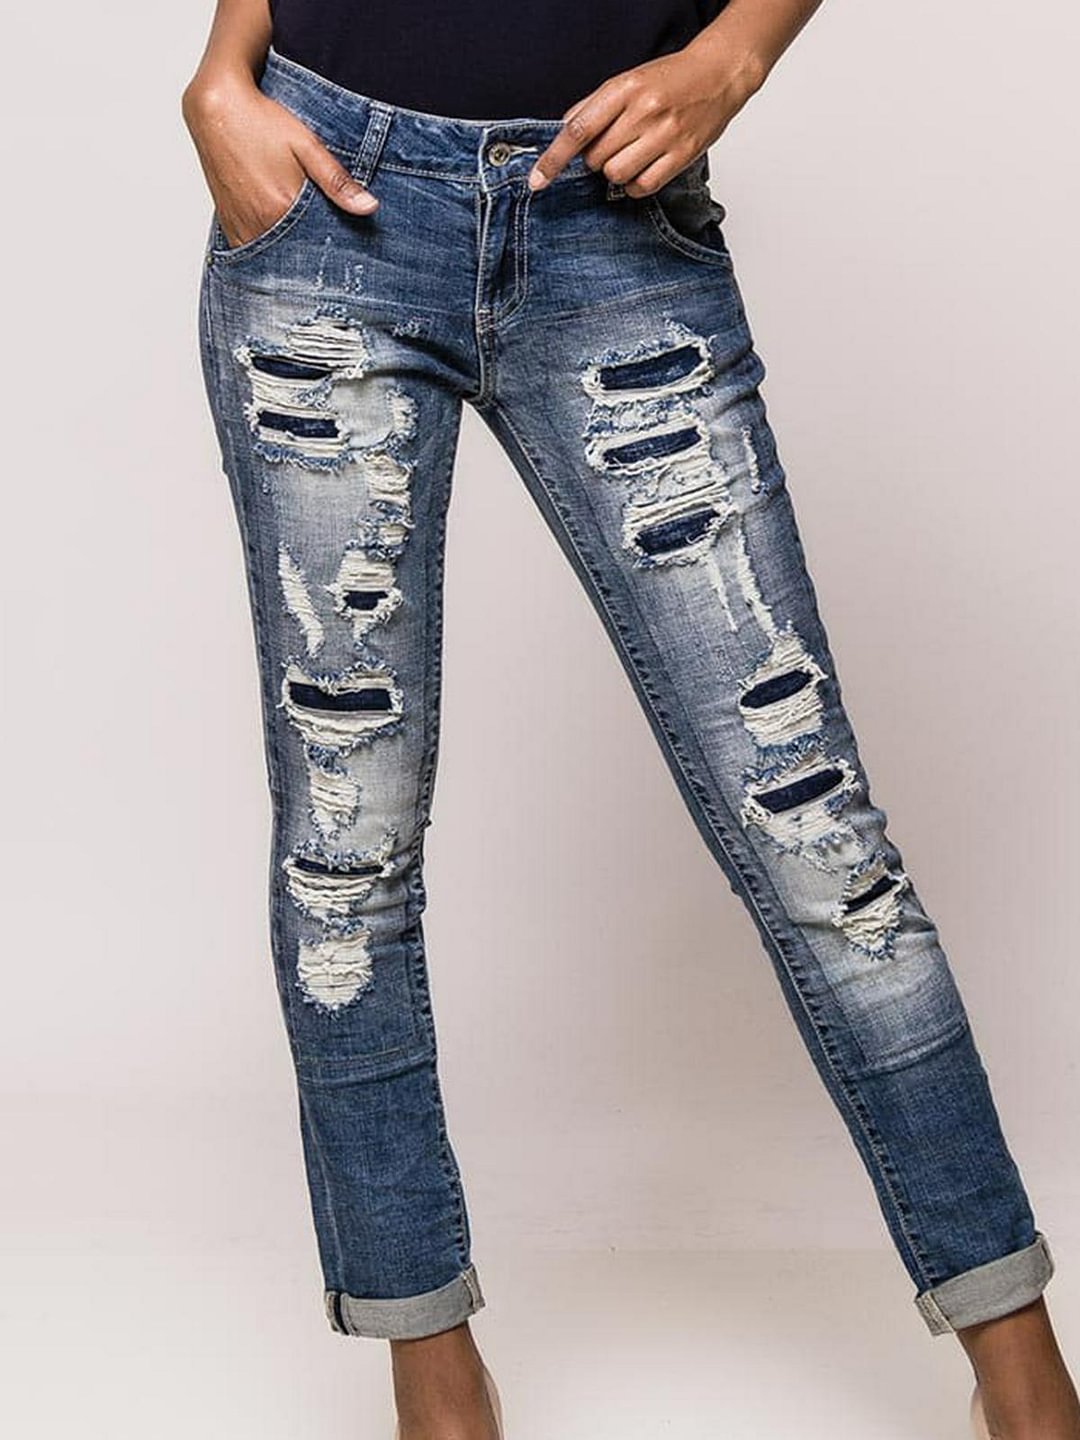 Denim Slashed Women Jeans Trousers(Plus Size)-Allyzone-Allyzone